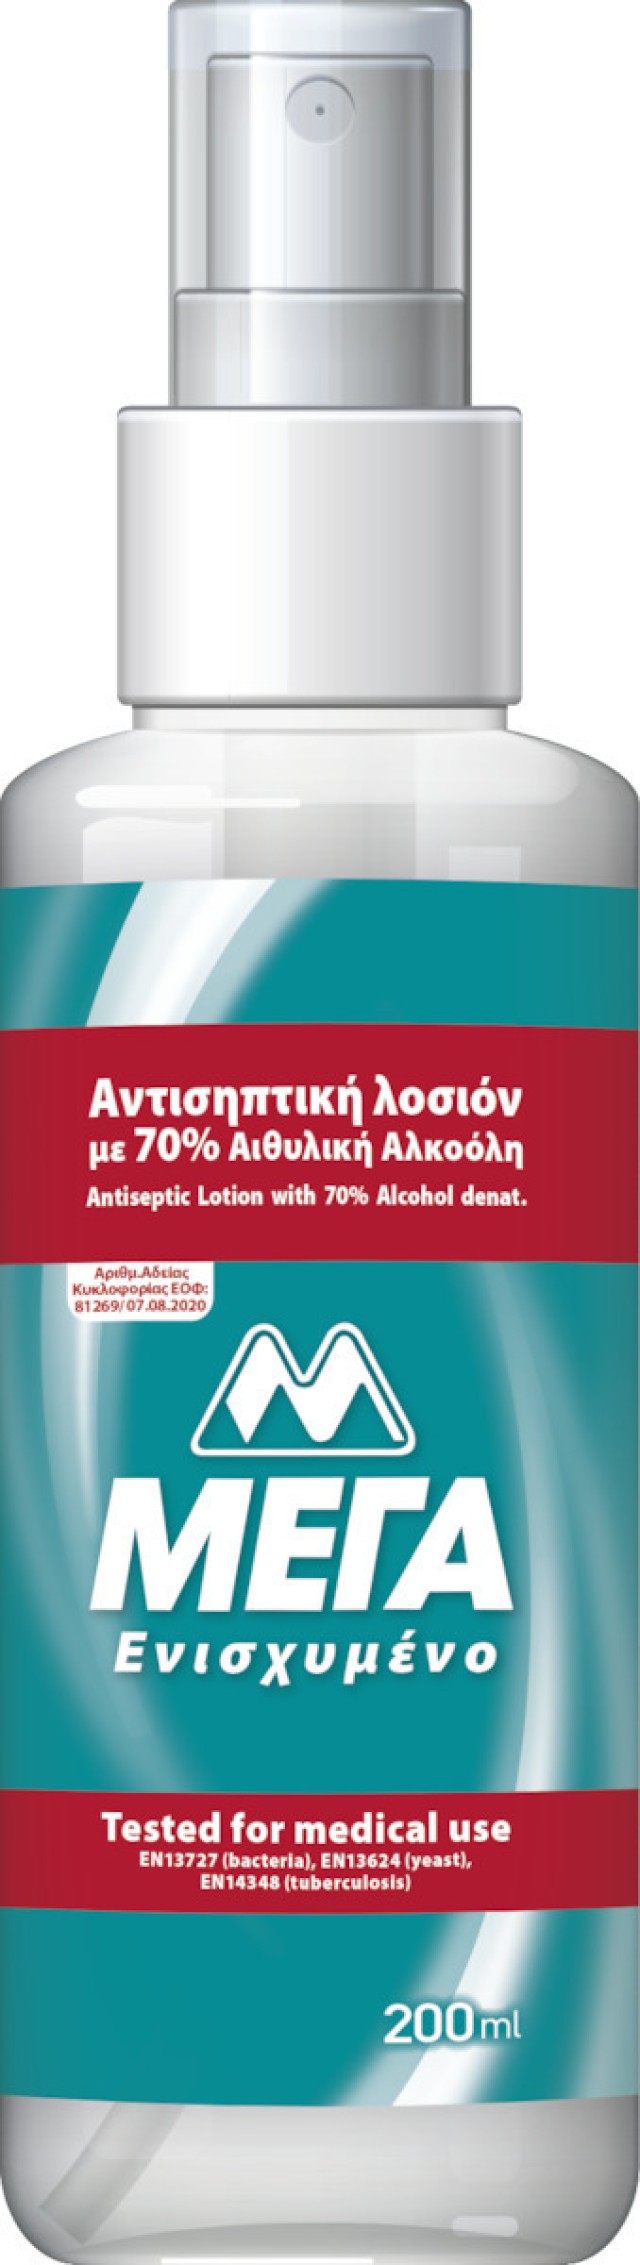 ΜΕΓΑ Αντισηπτική Λοσιόν με 70% Αιθυλική Αλκοόλη σε Σπρέι, 200ml